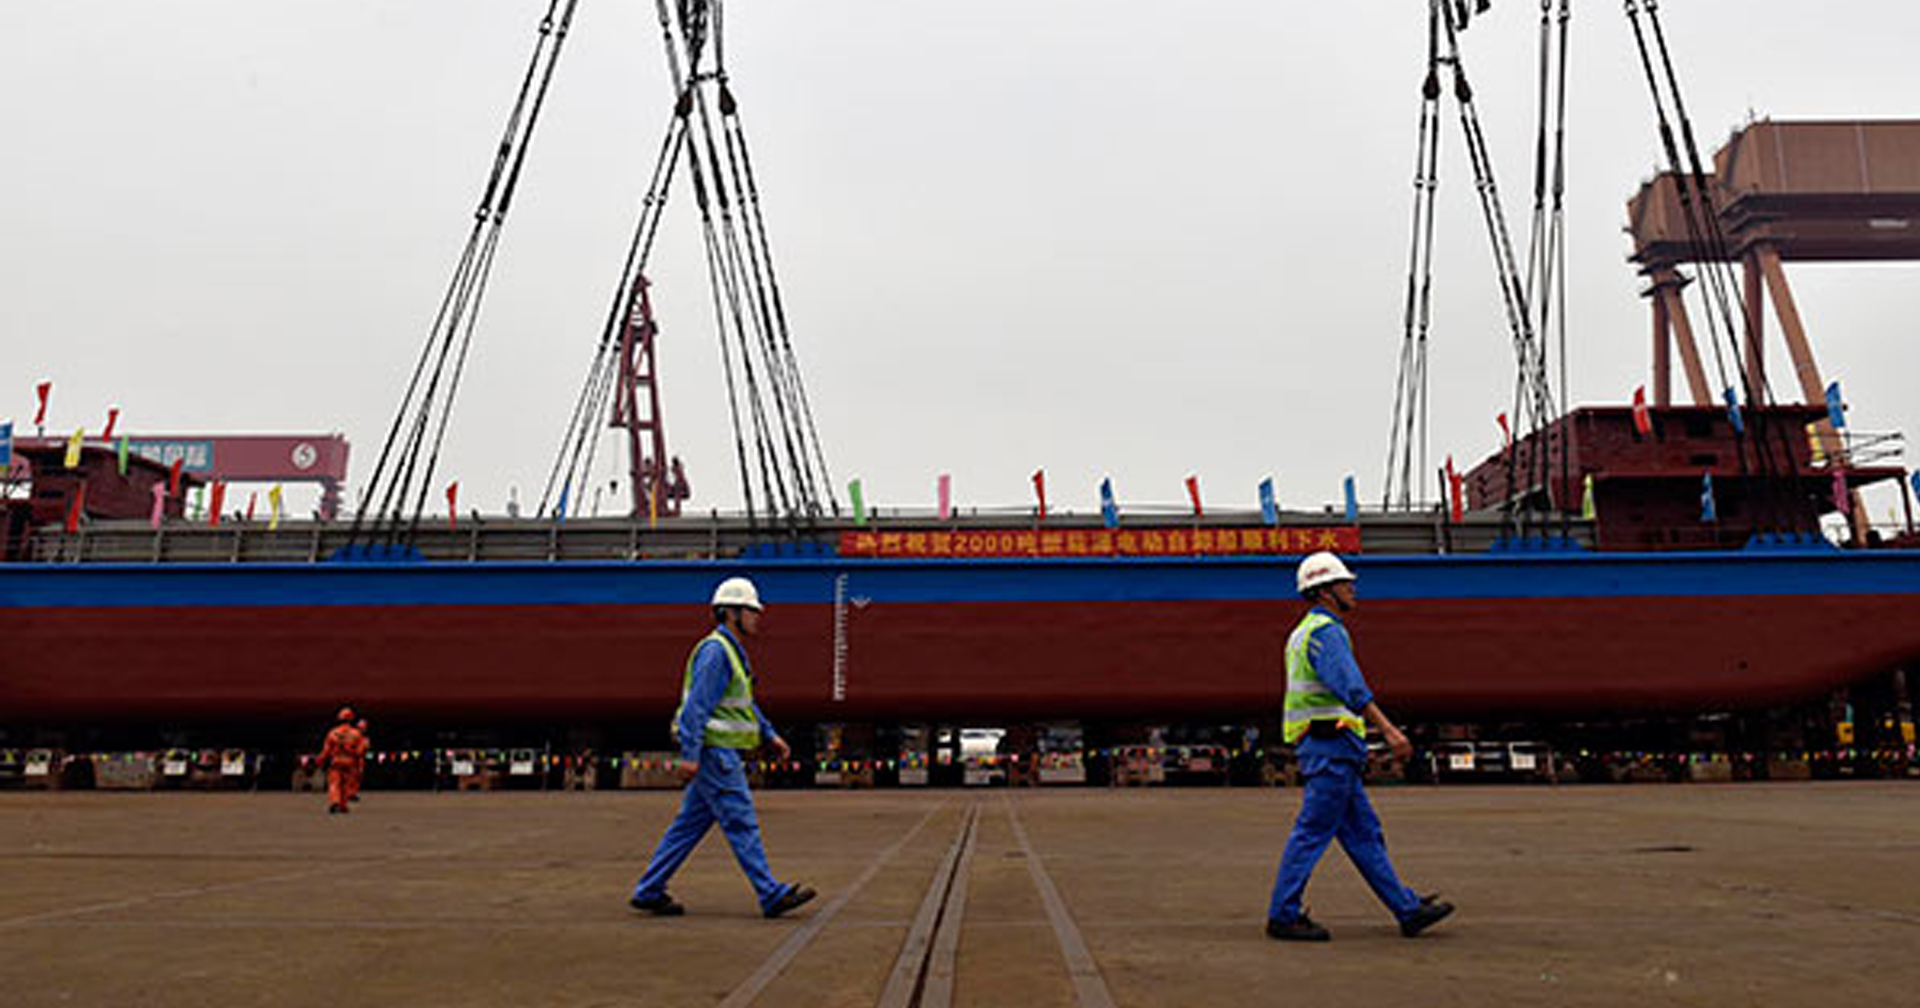 จีนเปิดตัว ‘เรือบรรทุกสินค้าพลังงานไฟฟ้า’ ลำแรกของโลก